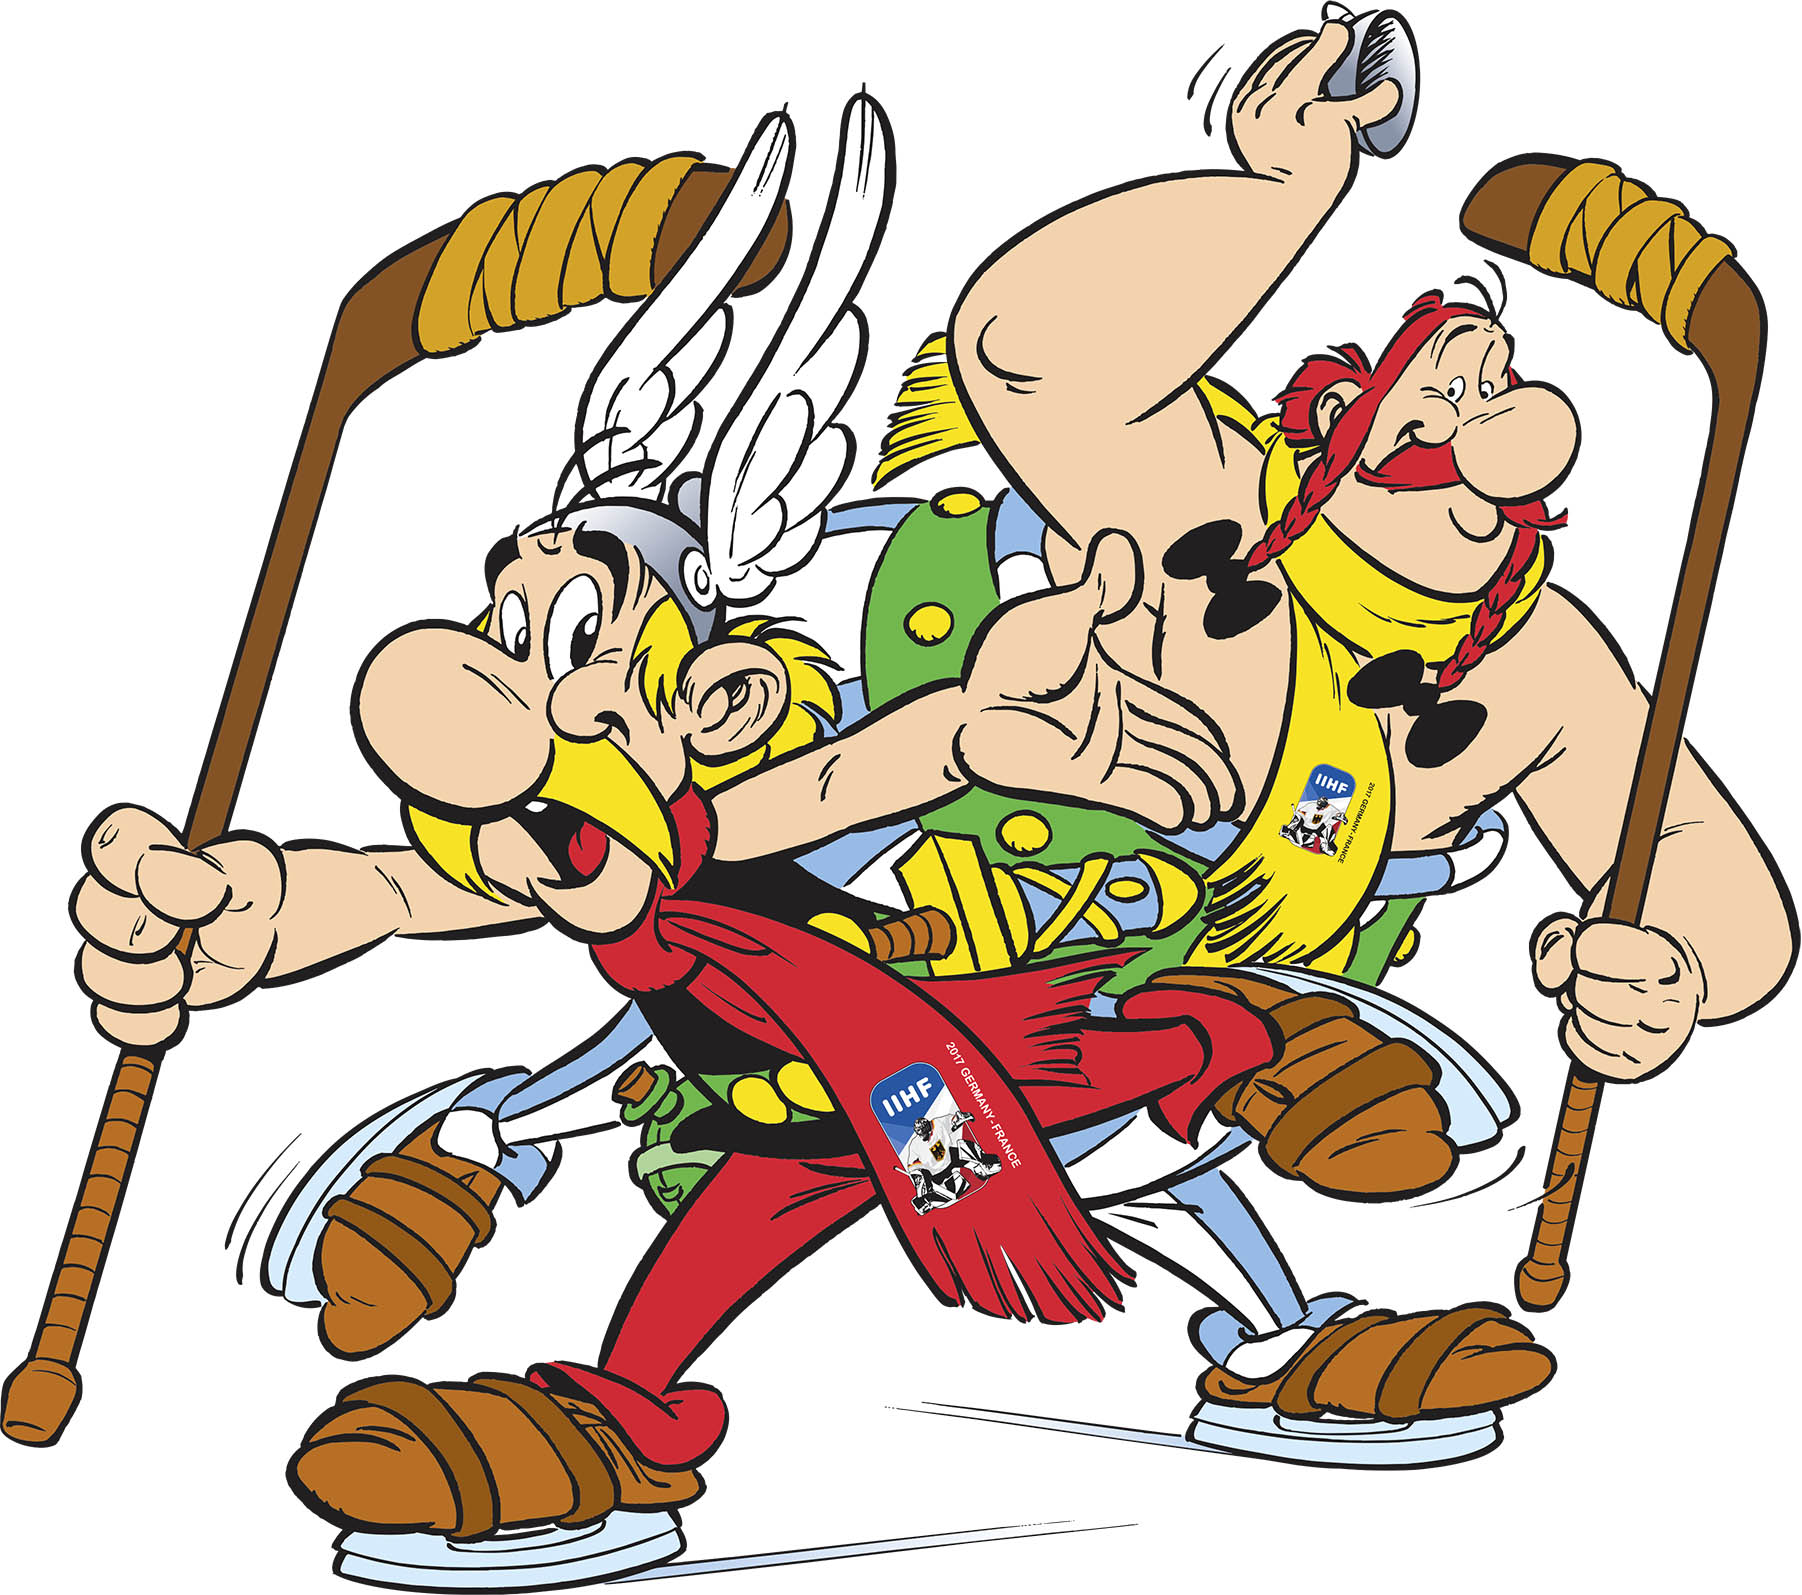 Asterix und Obelix sind offizielle Maskottchen der 2017 IIHF Eishockey-Weltmeisterschaft in Paris und Köln copyright: 2016 LES EDITIONS ALBERT RENE / GOSCINNY-UDERZO